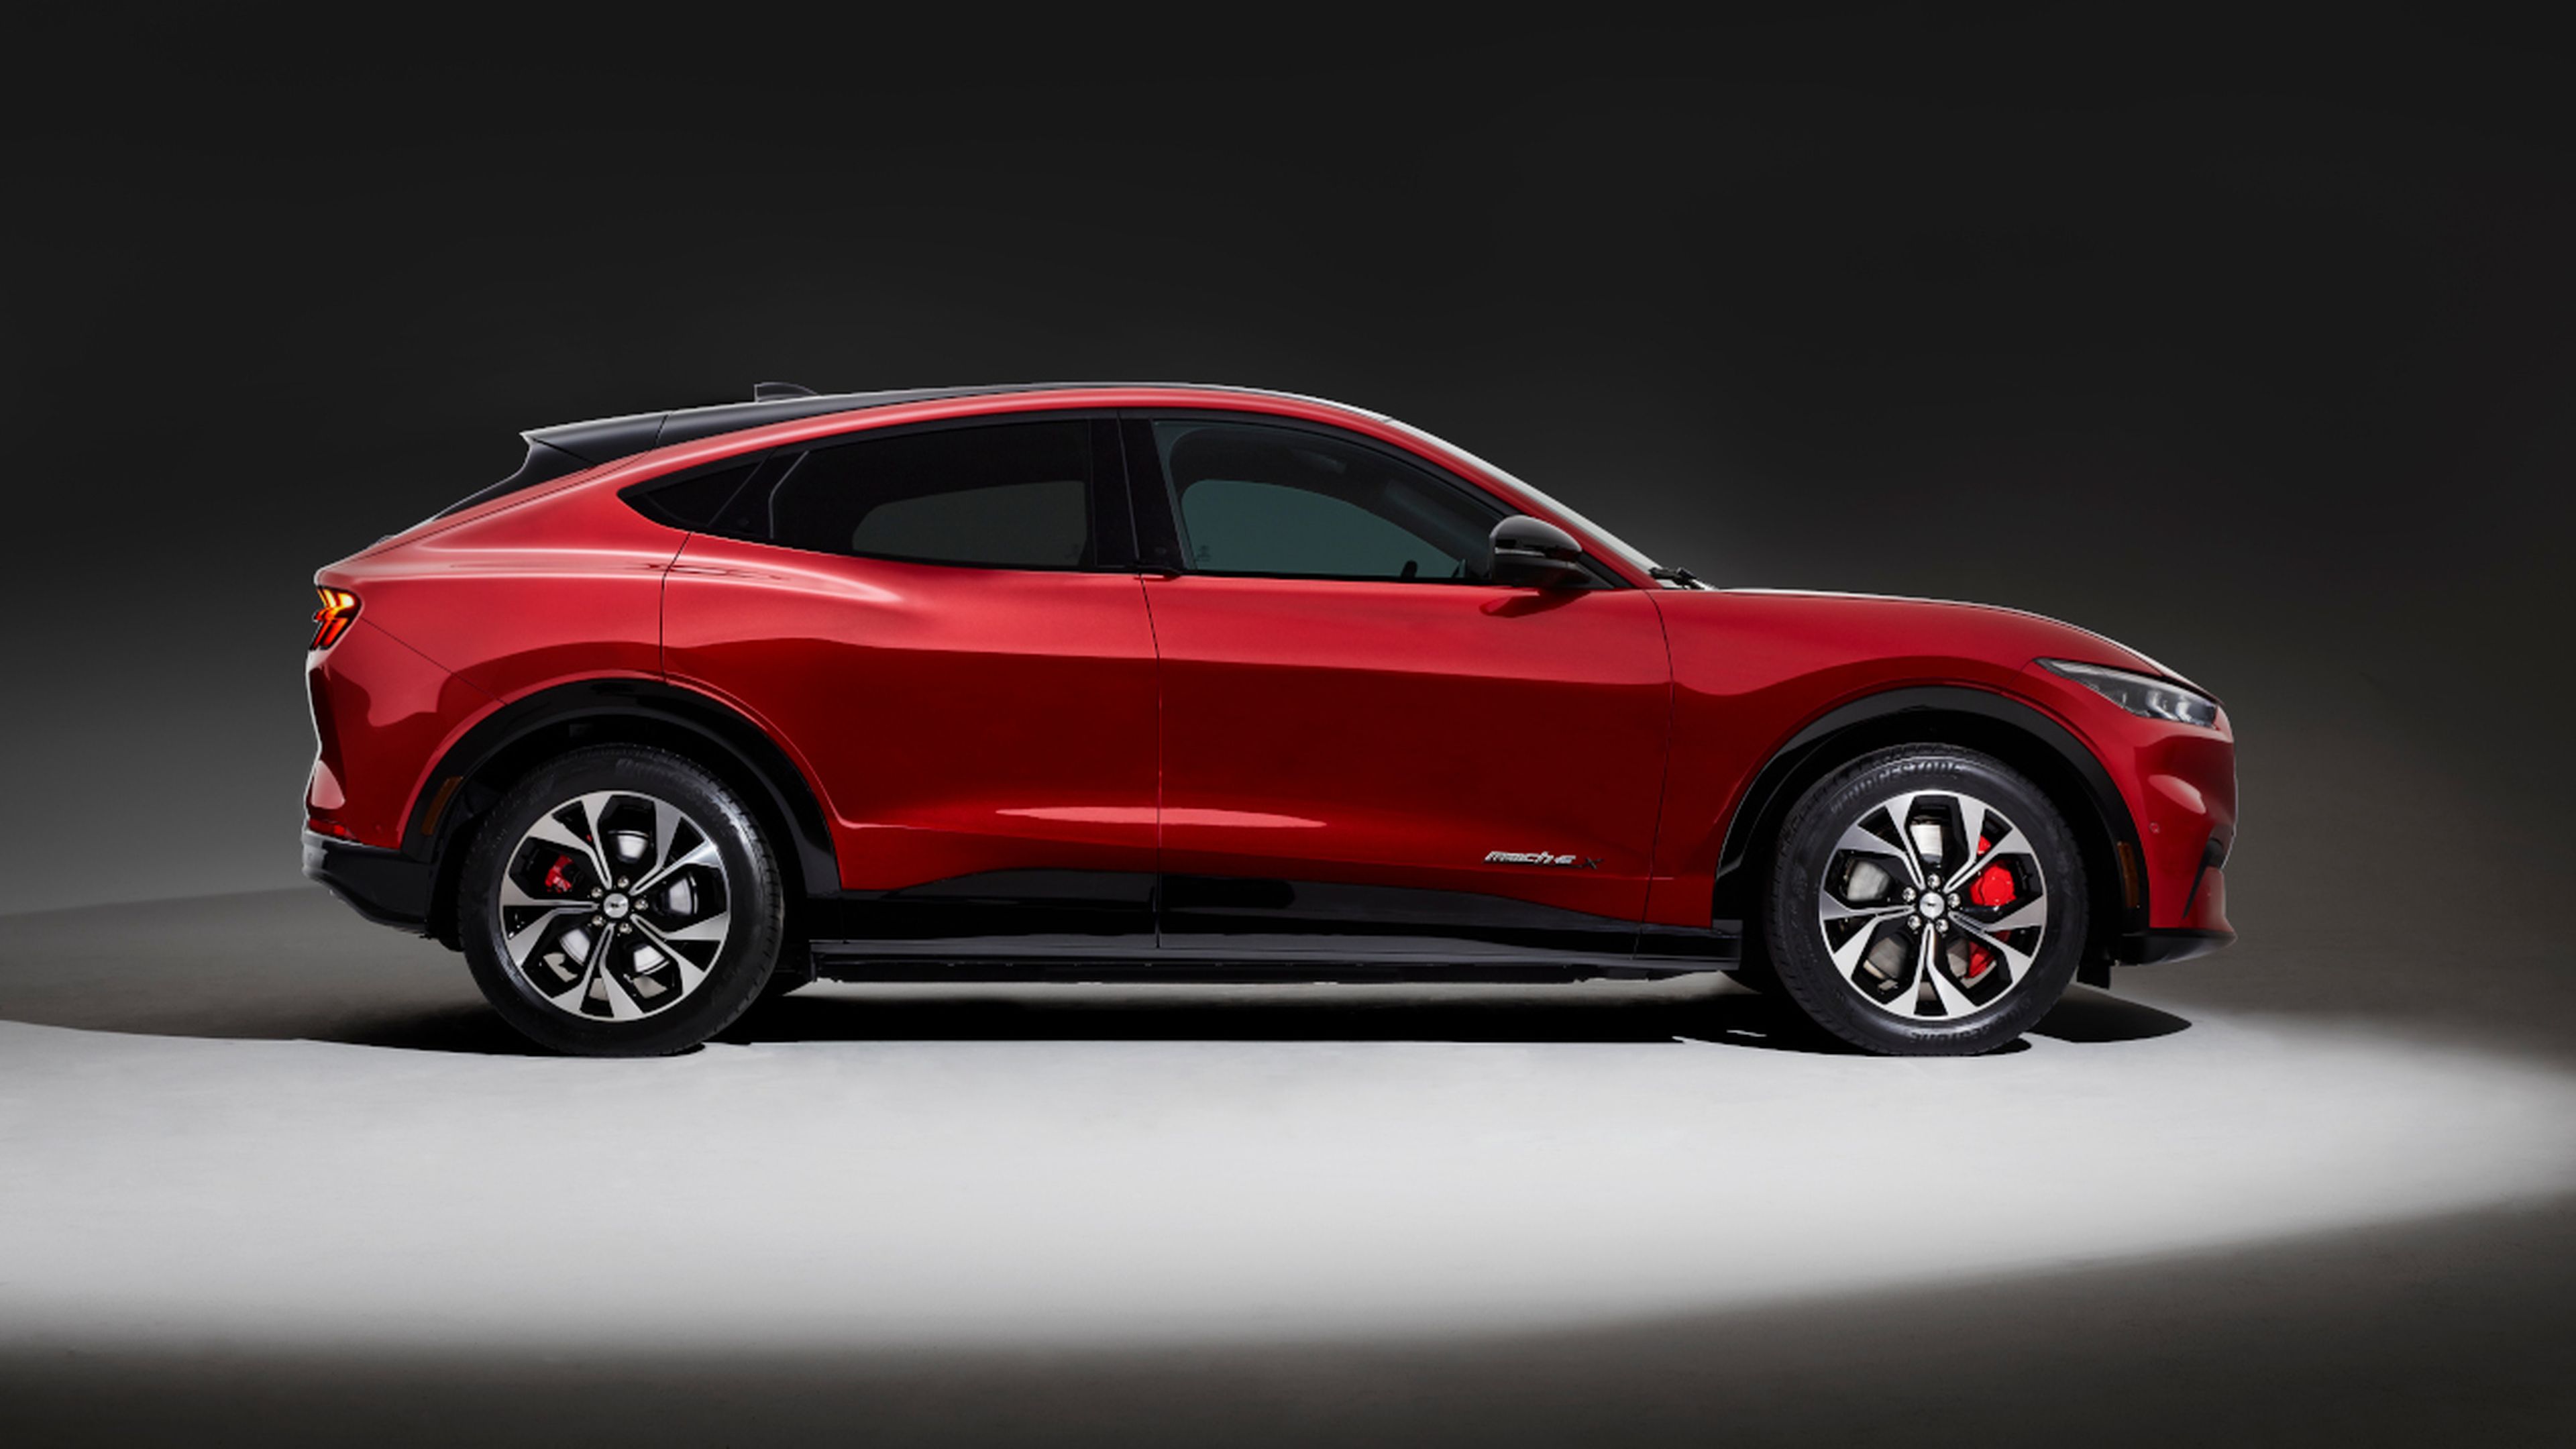 La silueta del Mustang Mach-E presenta una línea coupé para enfatizar la inspiración en el espíritu del icónico Mustang.